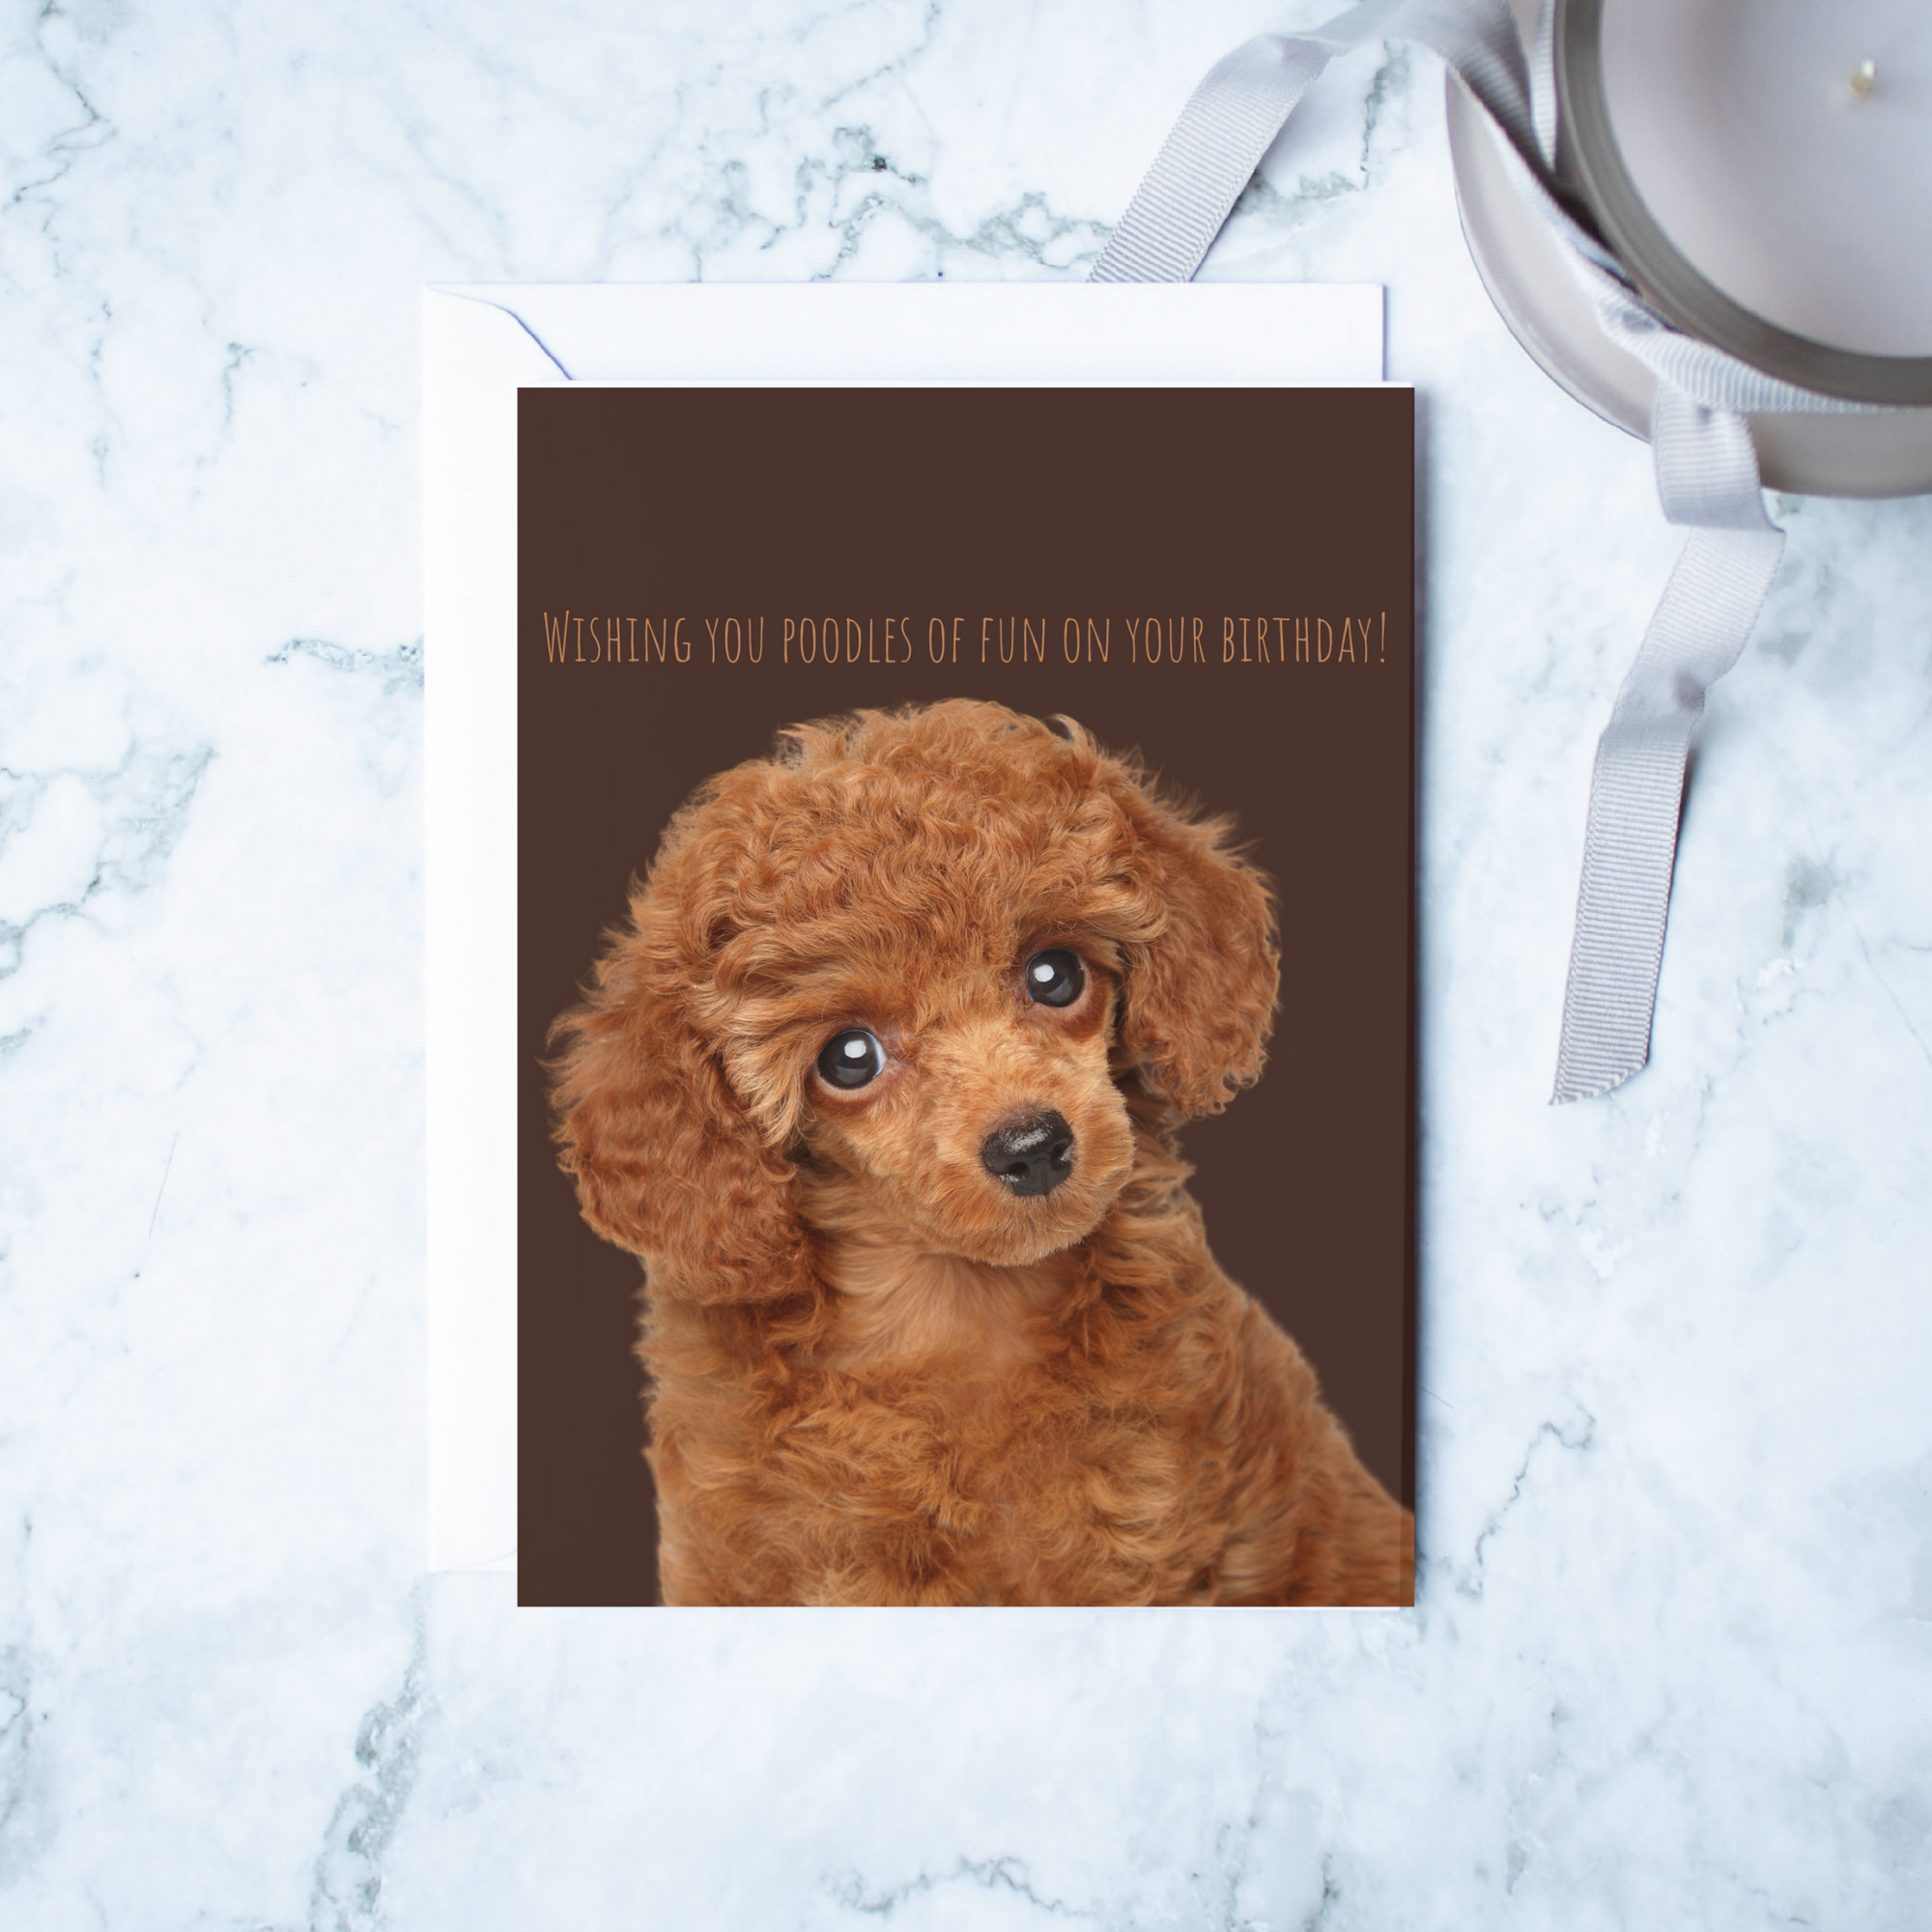 Poodles of Fun Dog Greeting Card